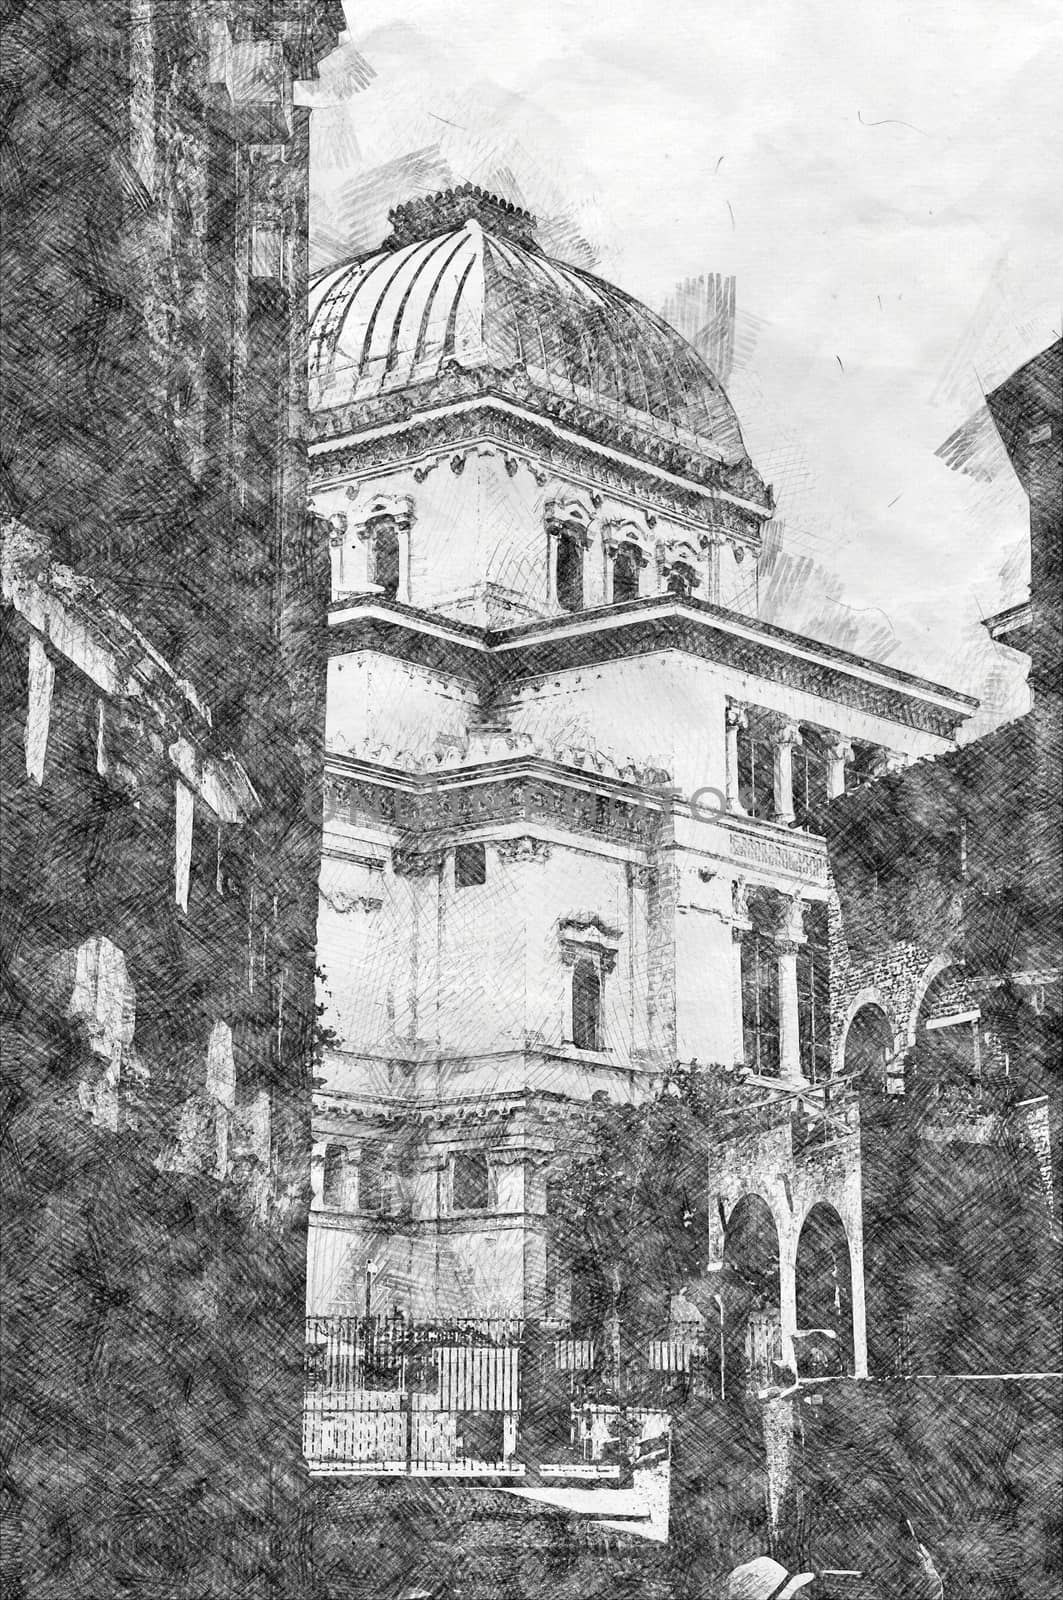 Digital illustration in pencil sketch style of Tempio Maggiore di Roma, view from Casina of Vallati, Rome, Italy